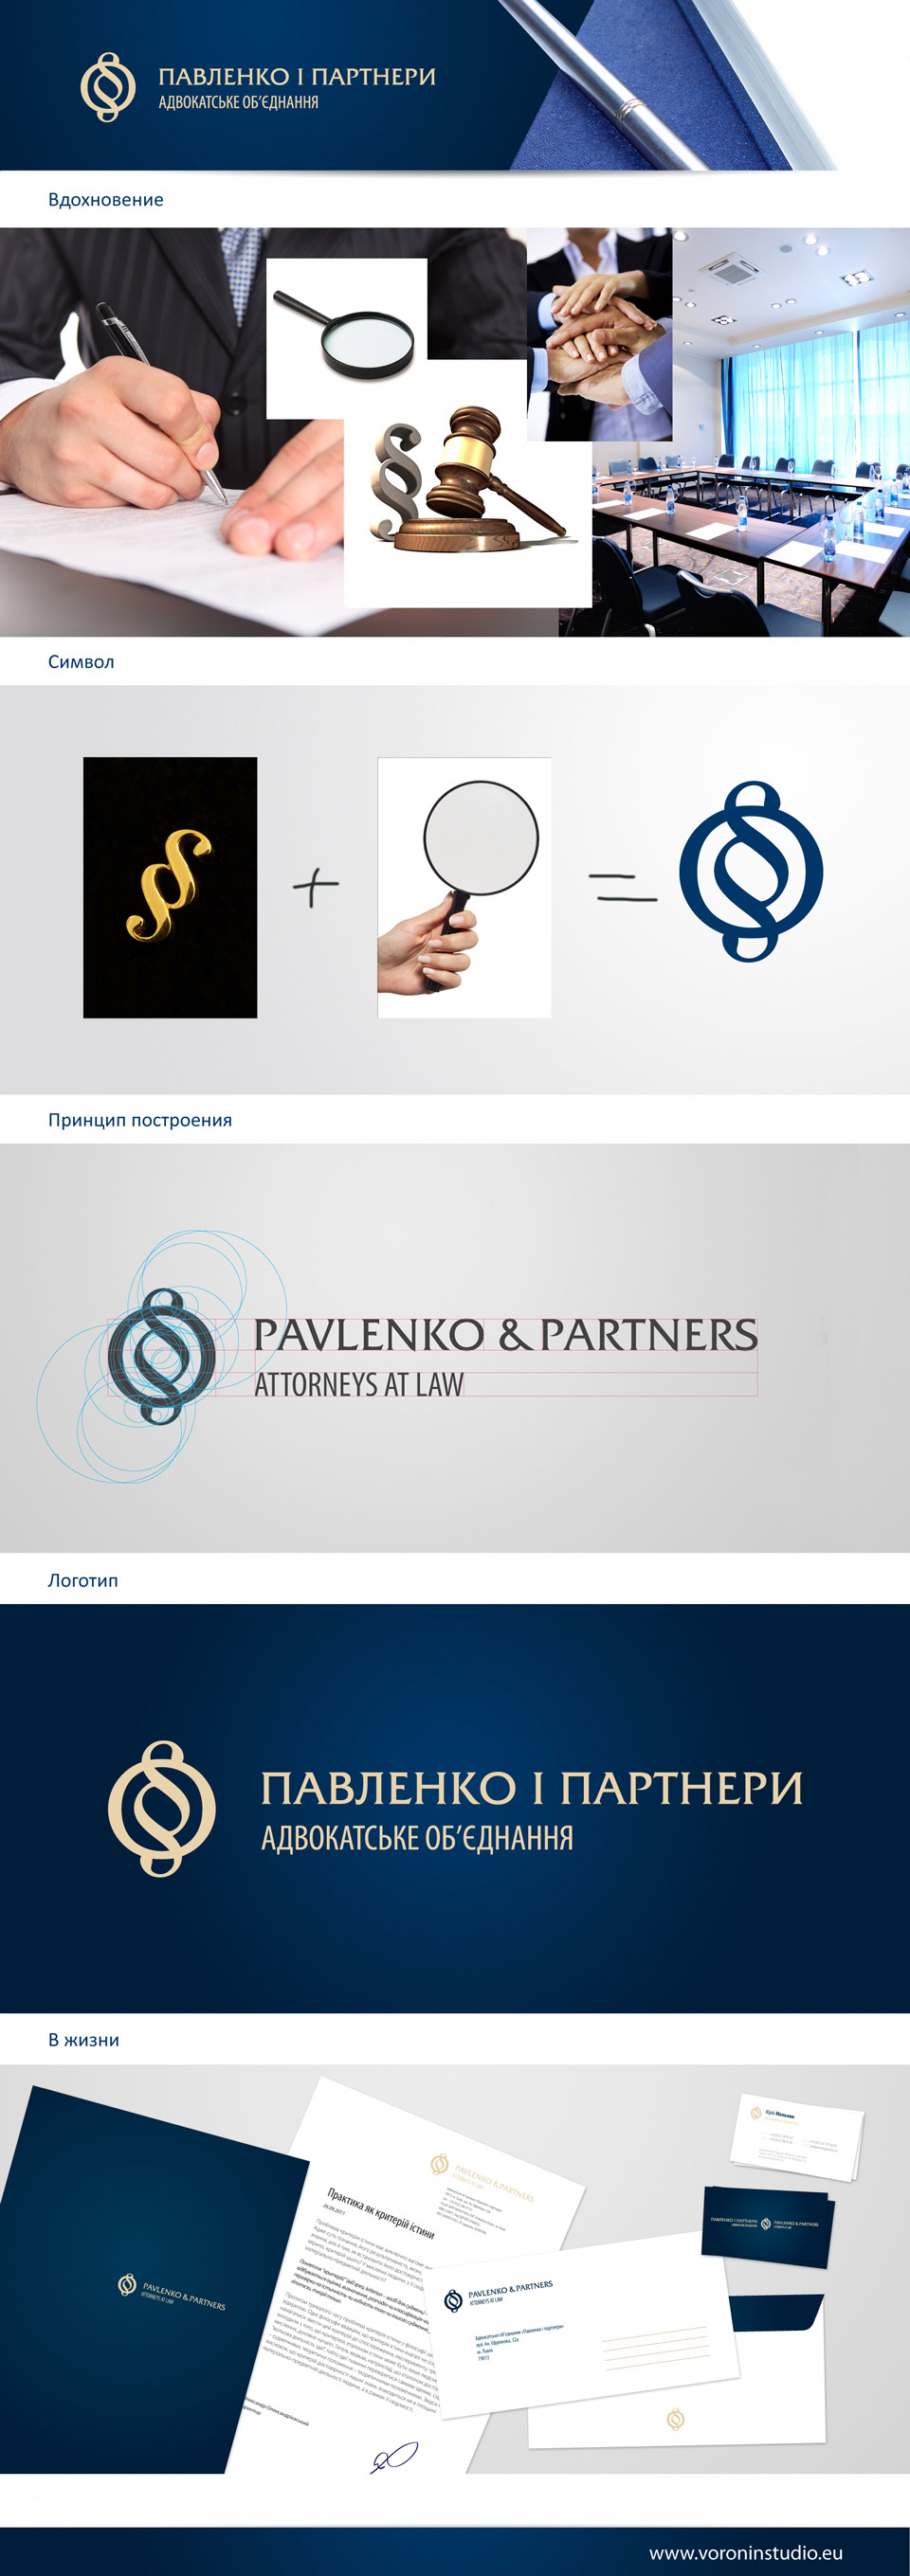 Логотип для объединения адвокатов «Павленко и партнеры»